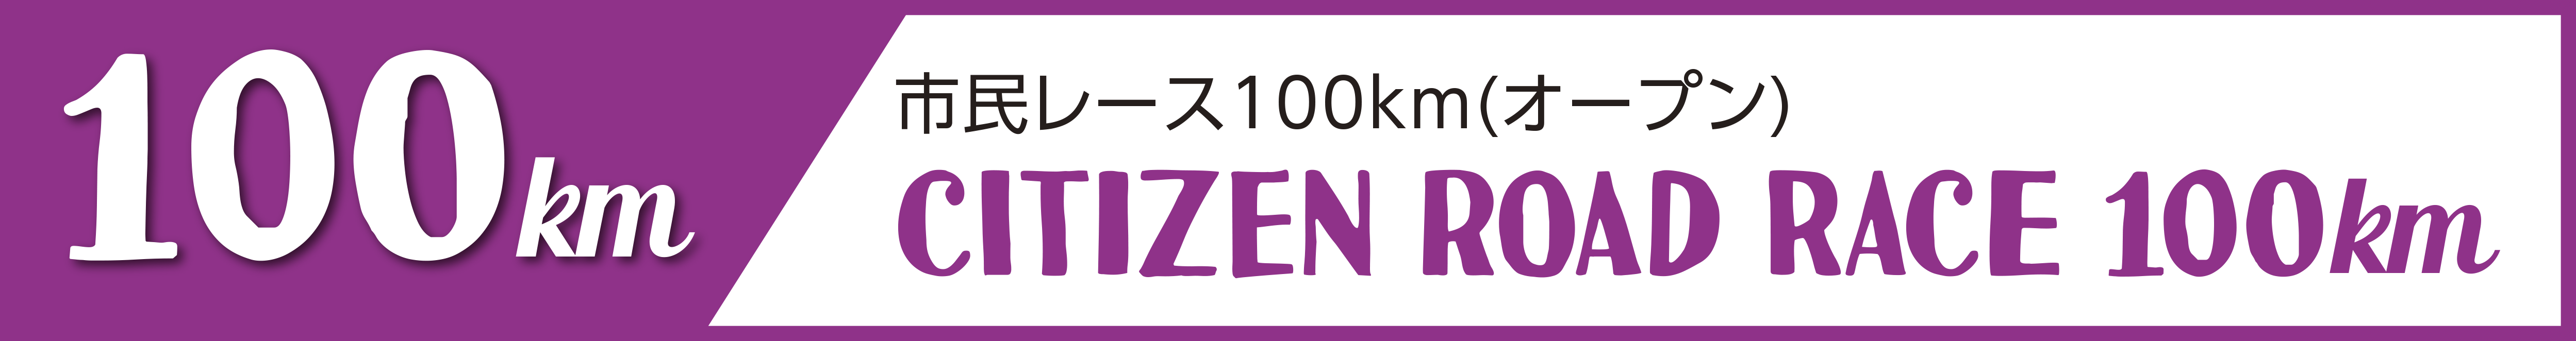 市民レース100km(オープン)